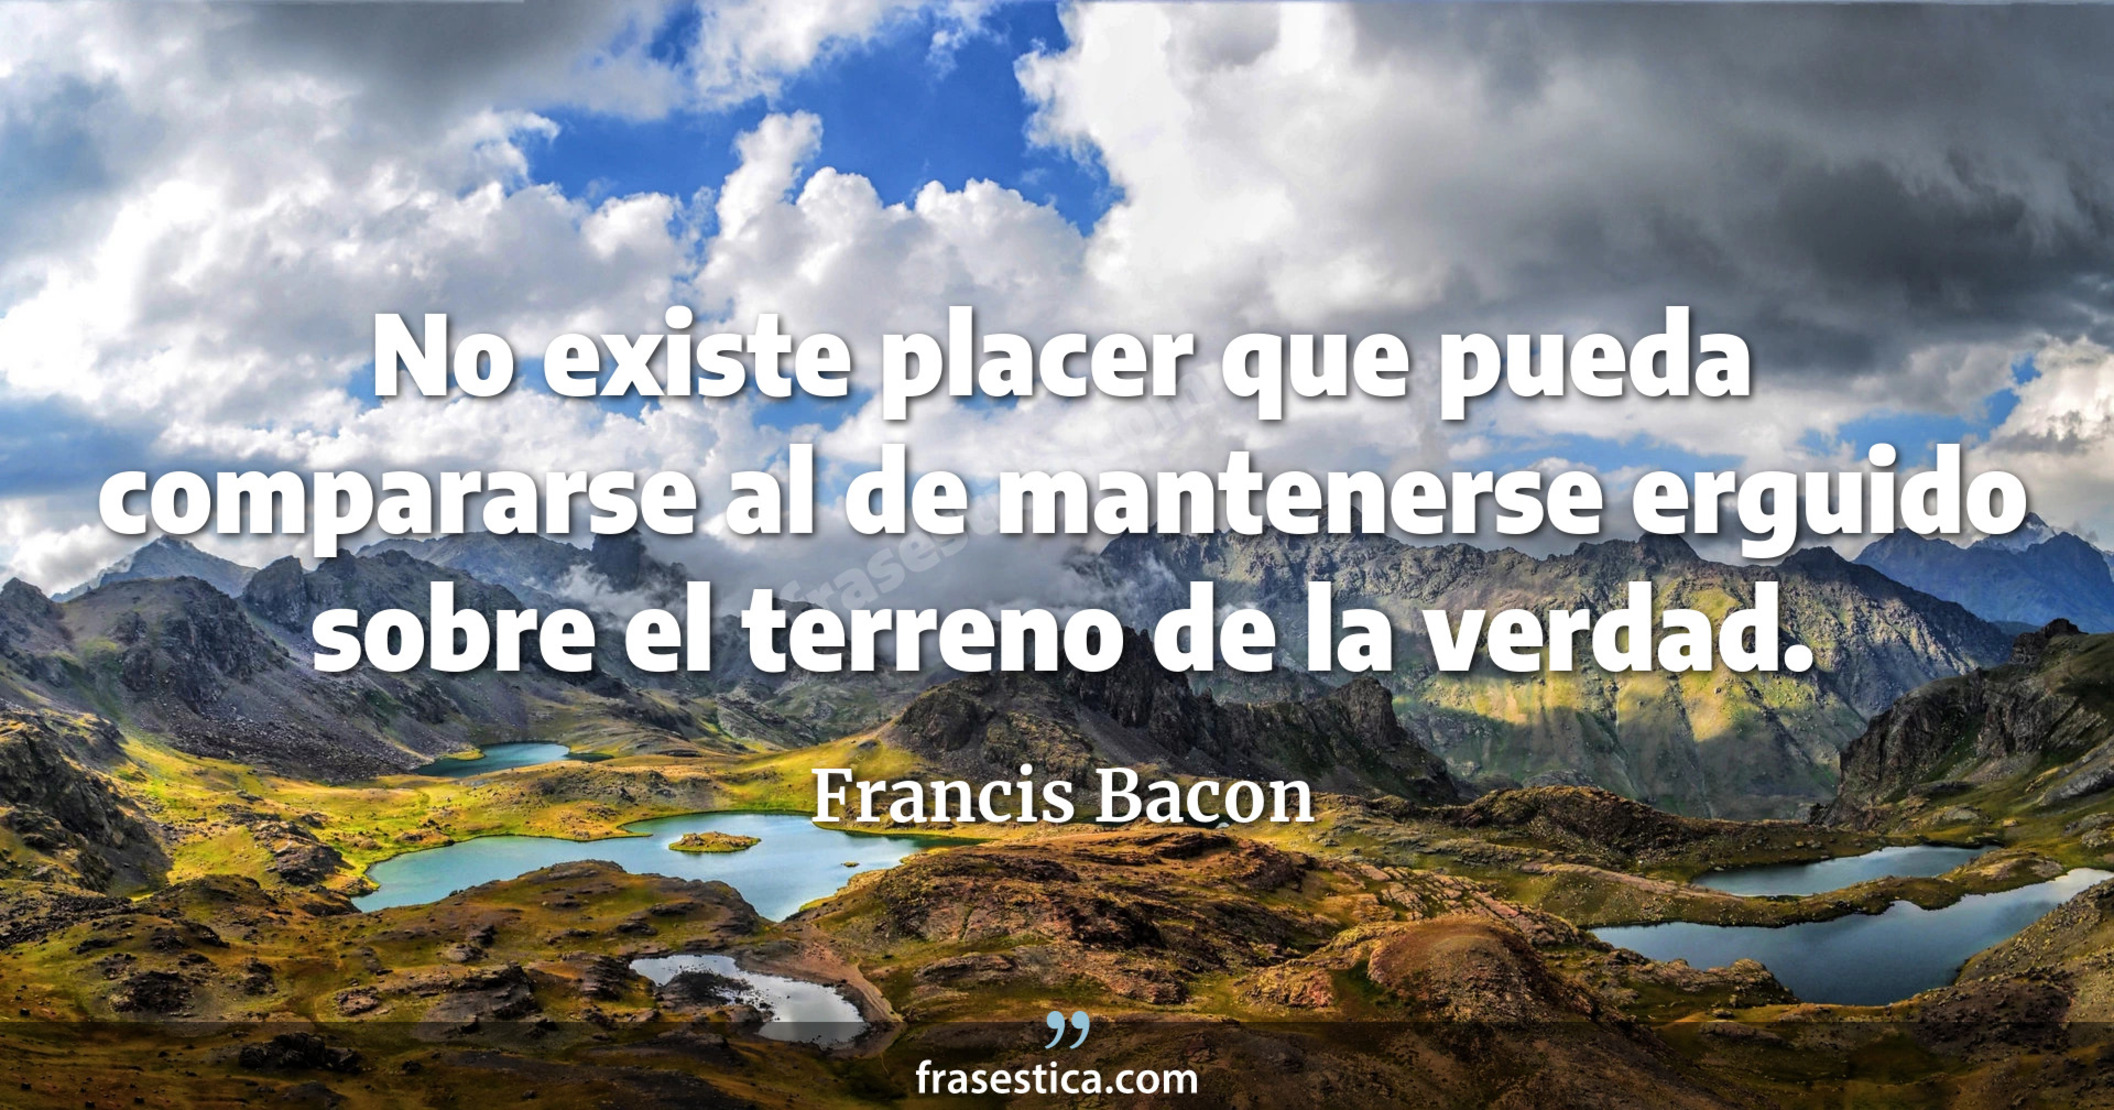 No existe placer que pueda compararse al de mantenerse erguido sobre el terreno de la verdad. - Francis Bacon